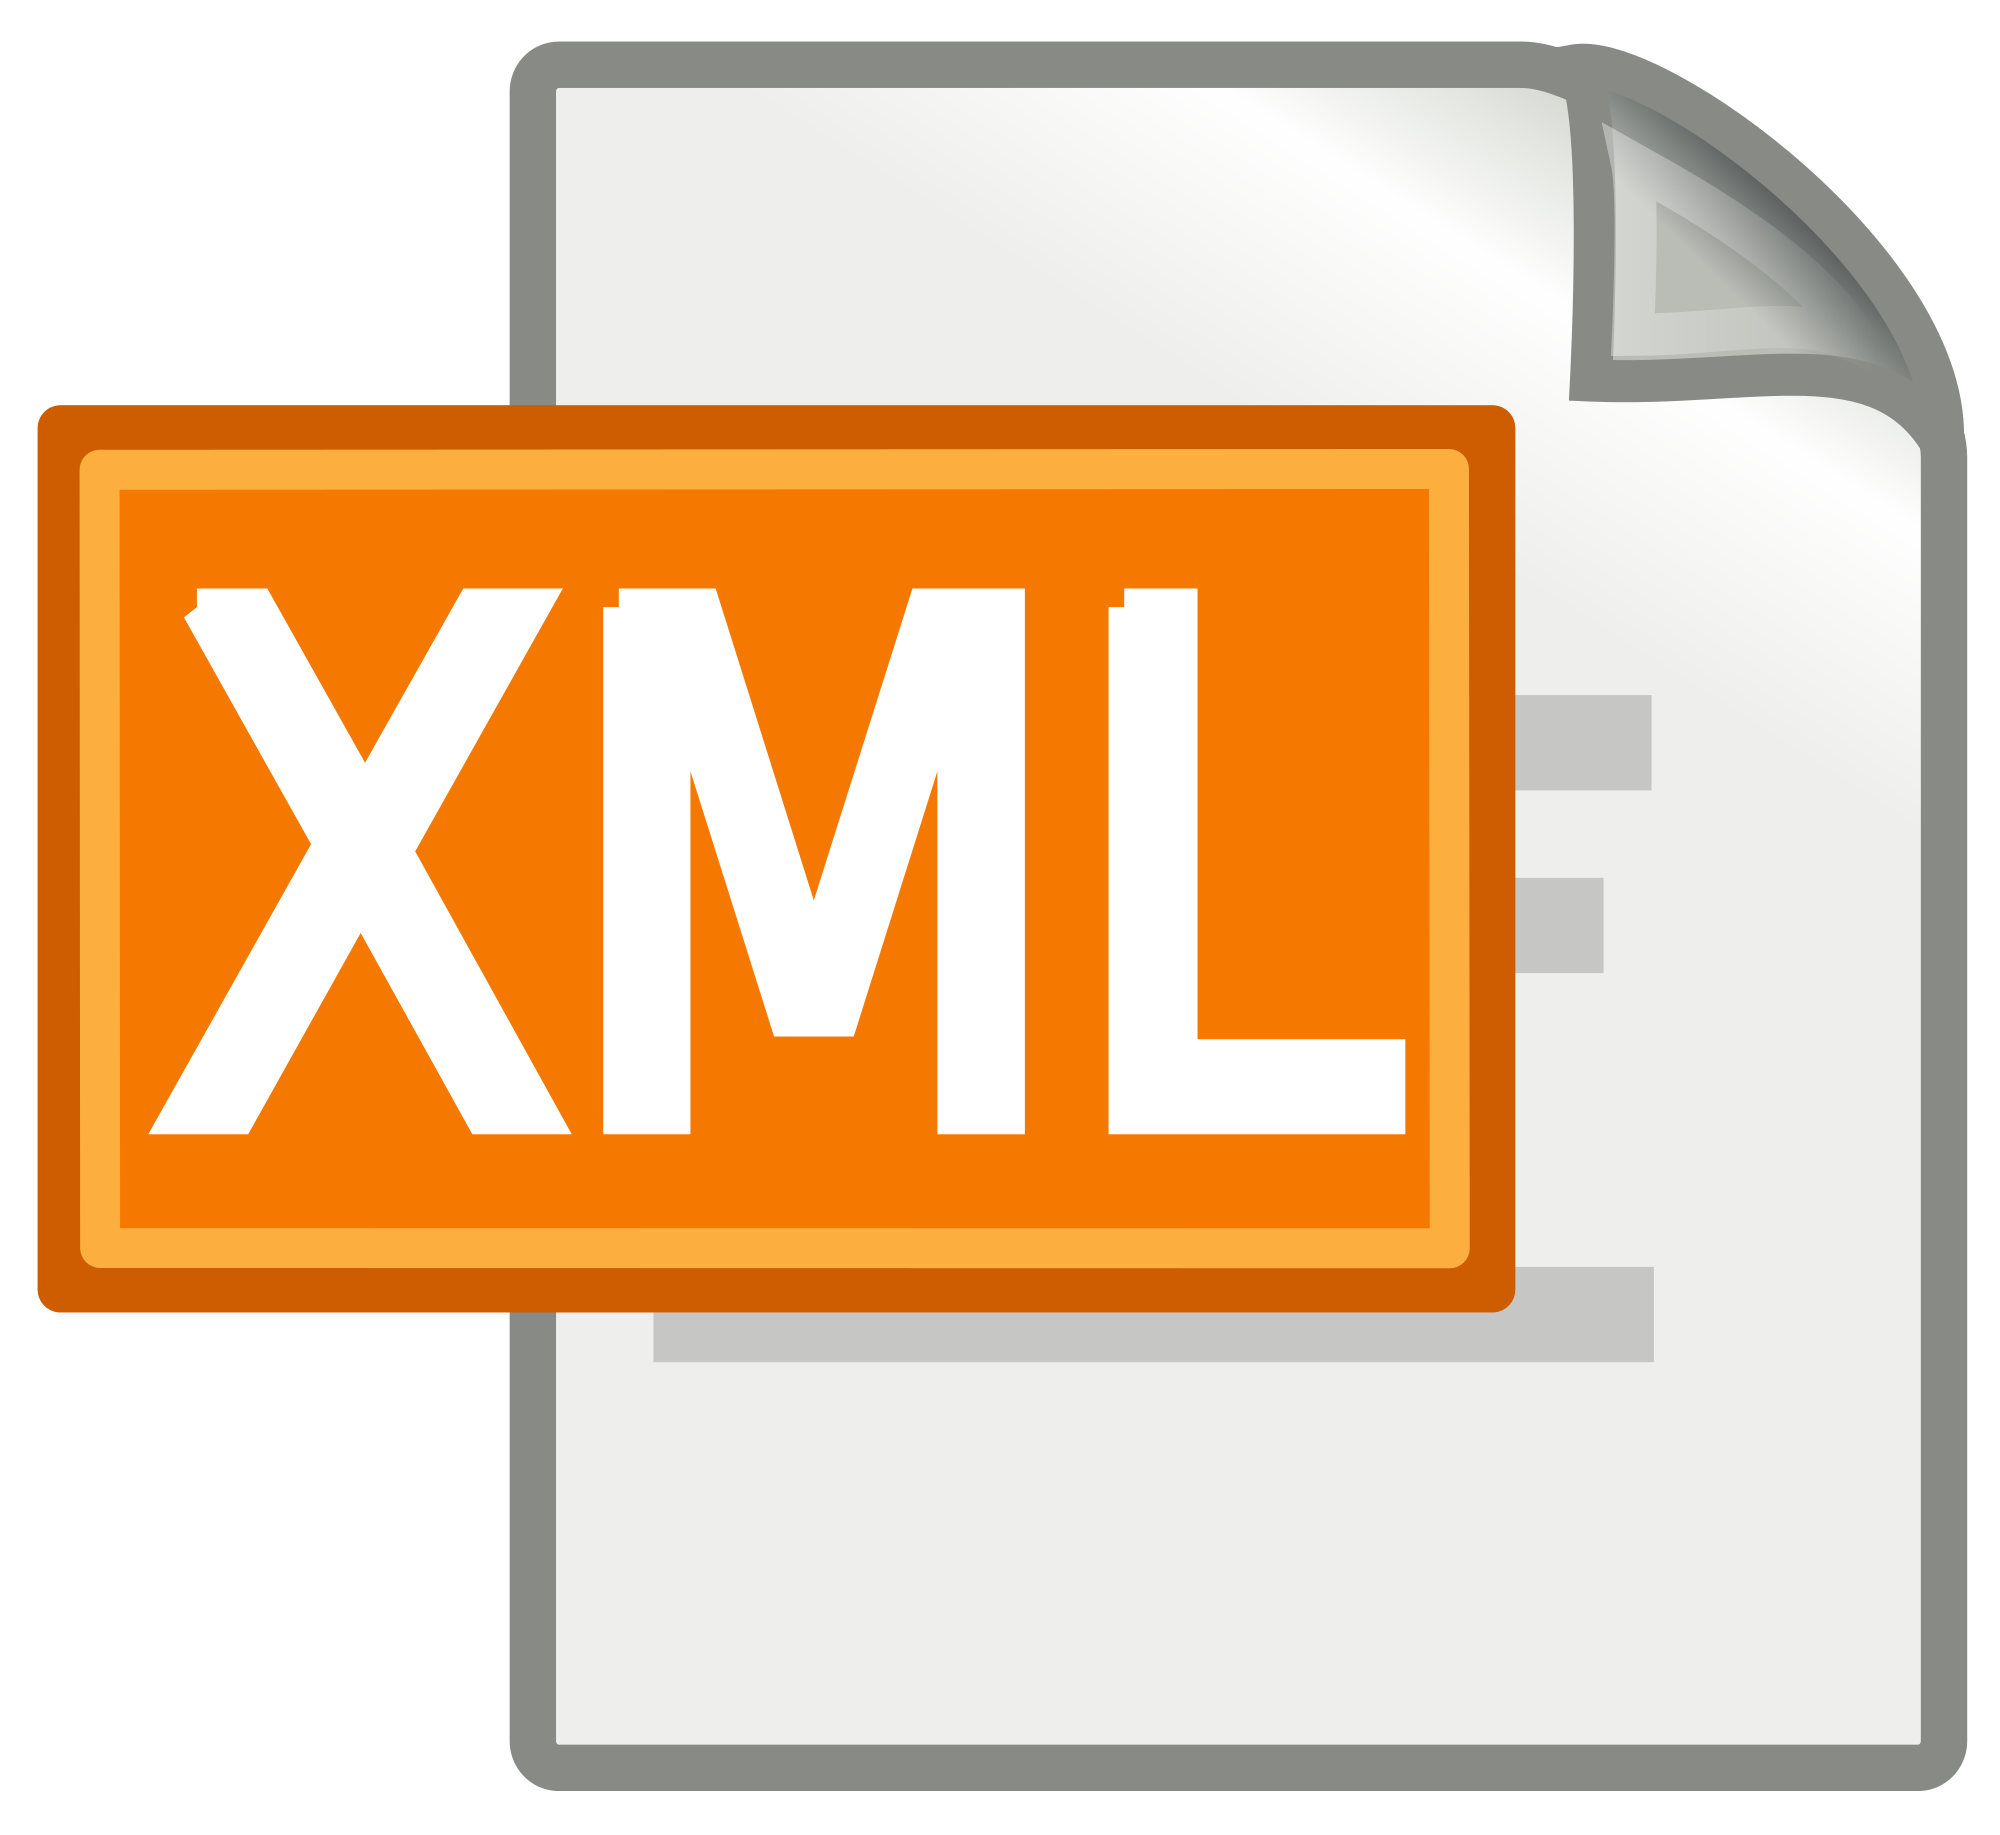 Xml logo